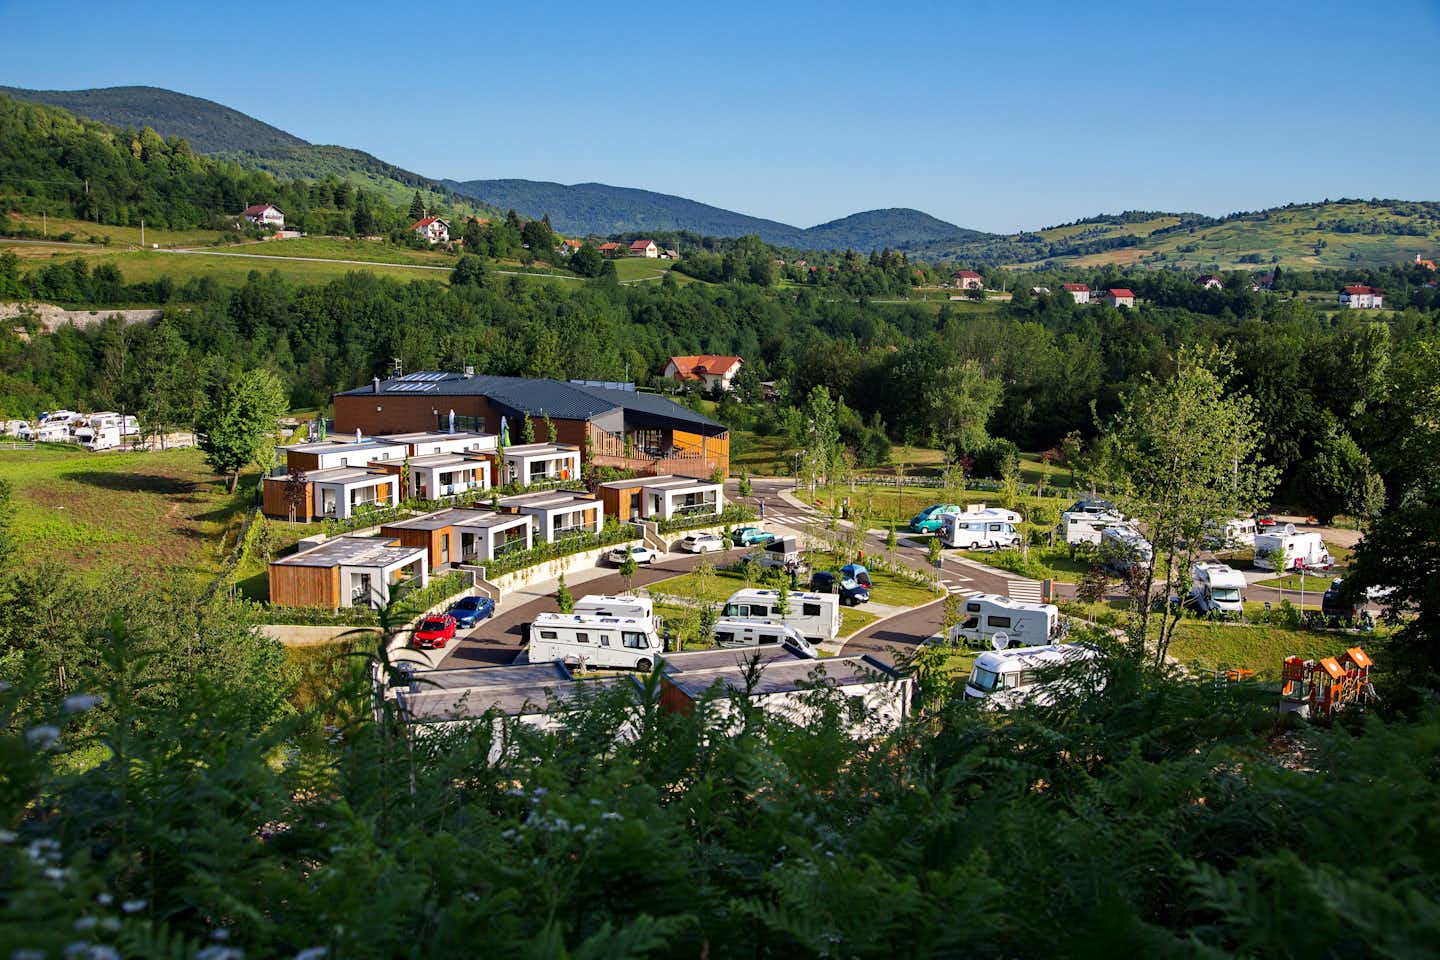 Camping Plitvice  - Luftaufnahme des Campingplatzes mit Mobilheimen und Standplätzen